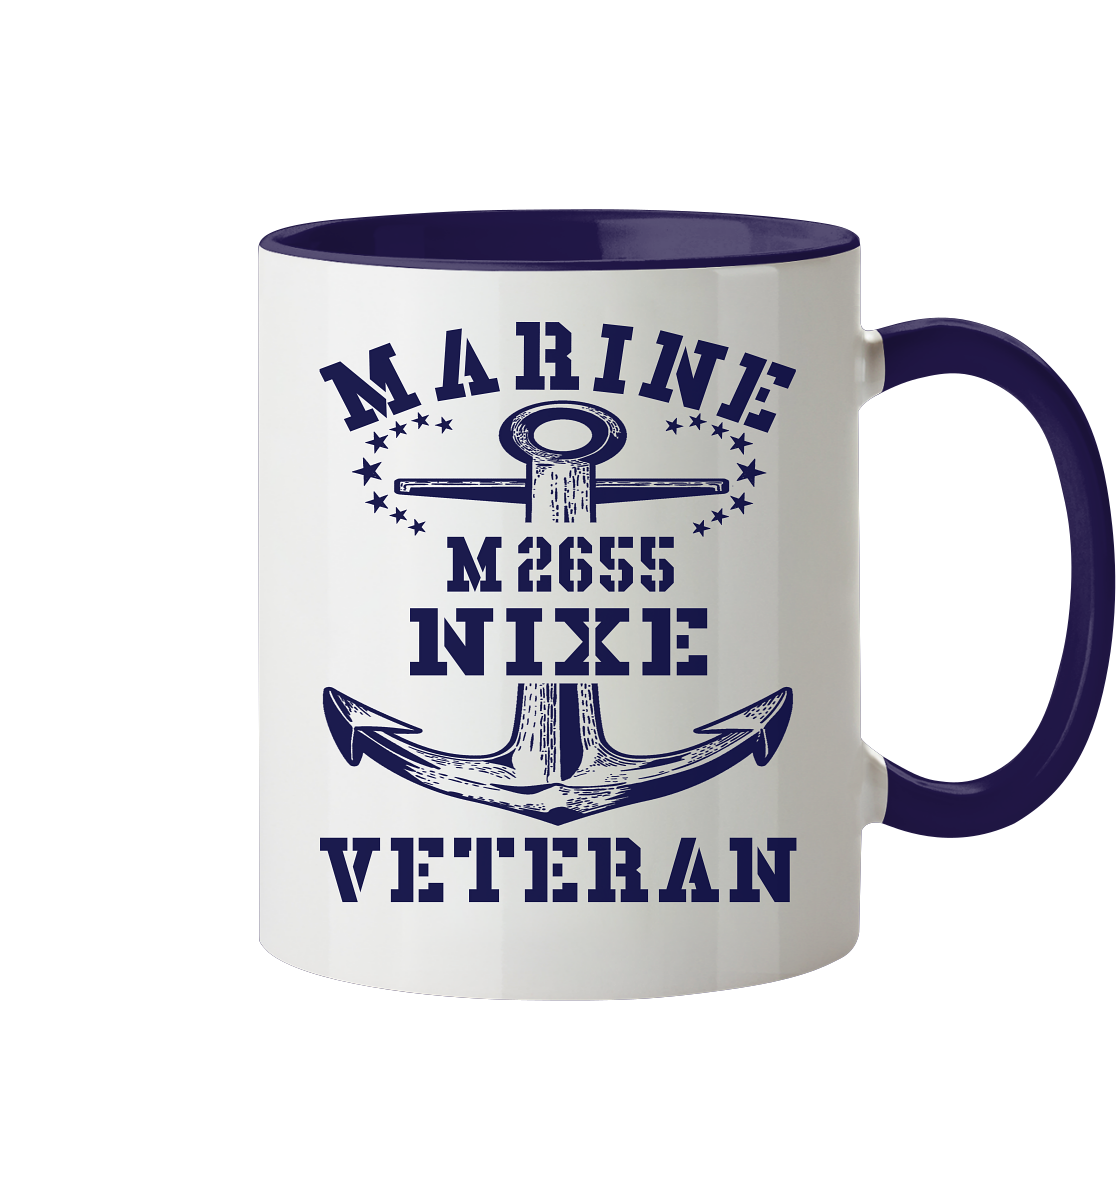 BiMi M2655 NIXE Marine Veteran - Tasse zweifarbig